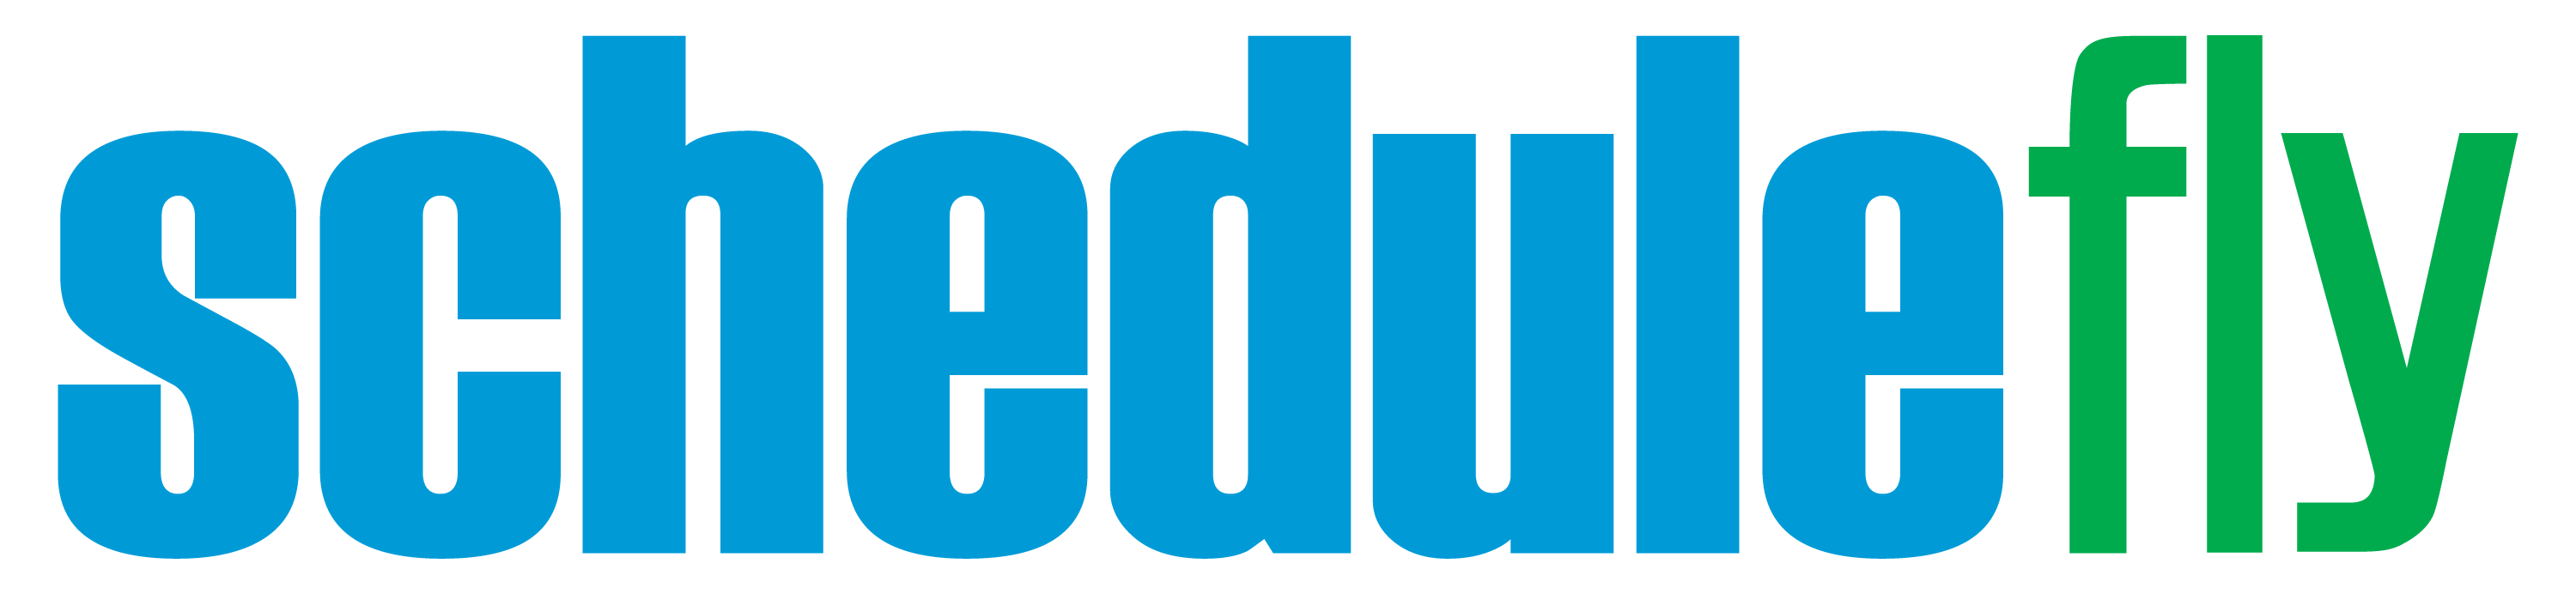 Schedulefly Logo